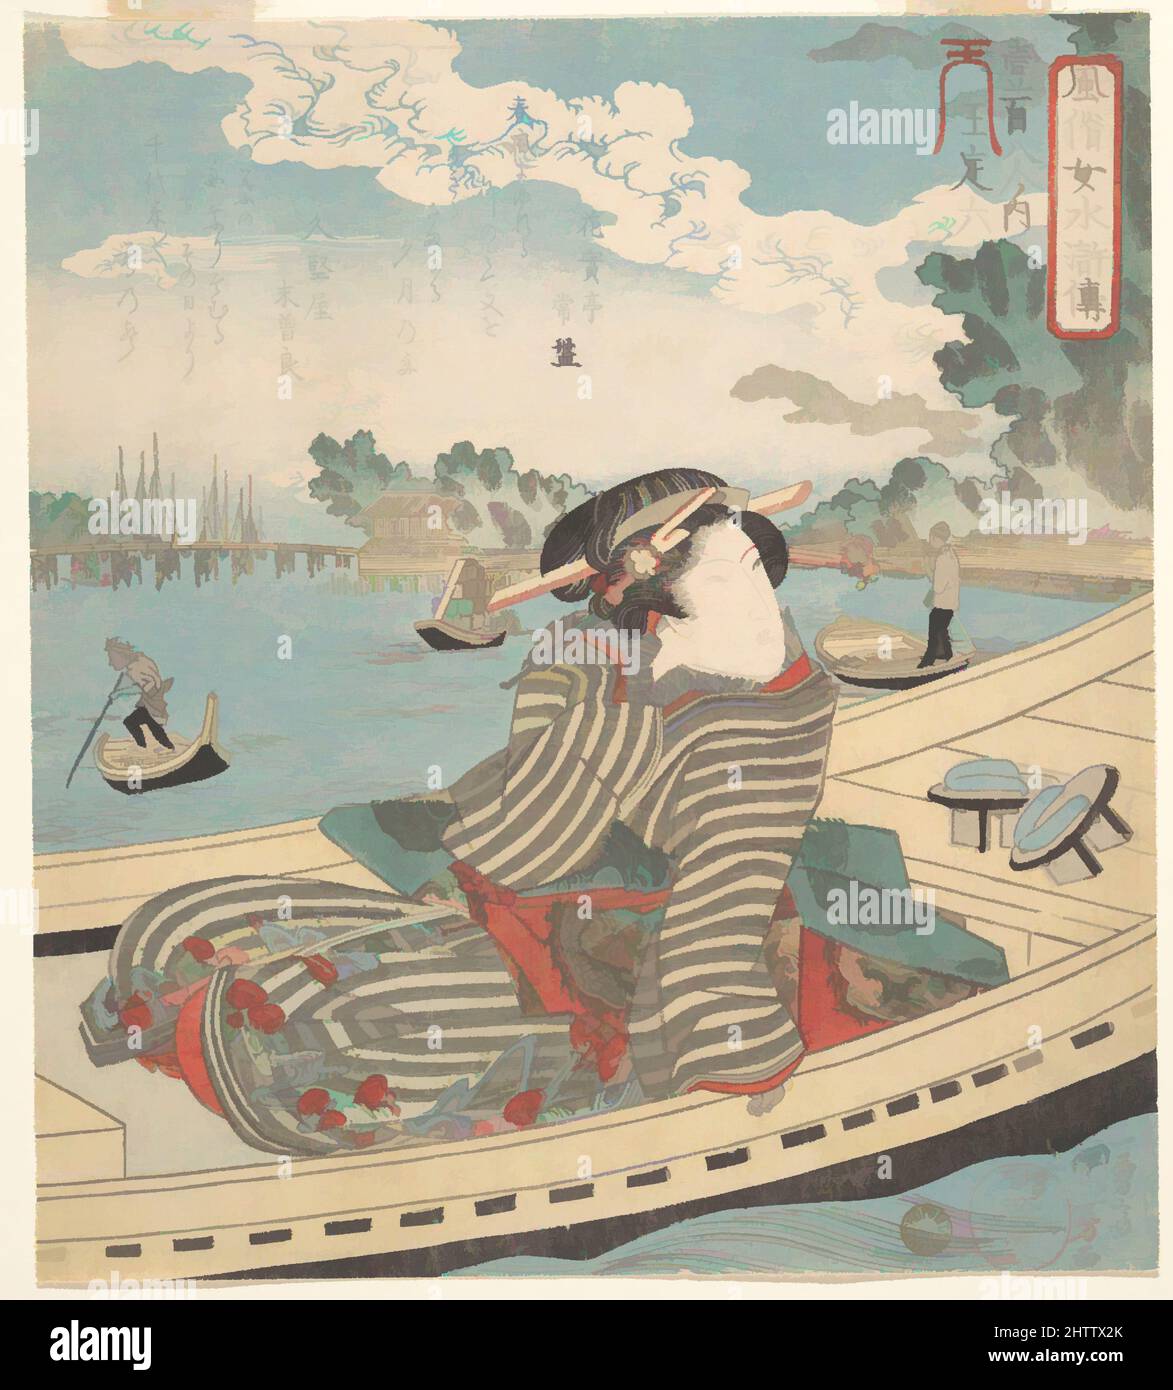 Art inspiré par la scène aquatique, époque Edo (1615–1868), 1840, Japon, imprimé polychrome sur bois (surimono) ; encre et couleur sur papier, 7 15/16 x 7 1/8 po. (20,2 x 18,1 cm), tirages, Utagawa Kuniyoshi (japonais, 1797–1861), en tirages japonais, De belles femmes sont souvent jetées dans les rôles de, les œuvres classiques modernisées par Artotop avec un peu de modernité. Formes, couleur et valeur, impact visuel accrocheur sur l'art émotions par la liberté d'œuvres d'art d'une manière contemporaine. Un message intemporel qui cherche une nouvelle direction créative. Artistes qui se tournent vers le support numérique et créent le NFT Artotop Banque D'Images